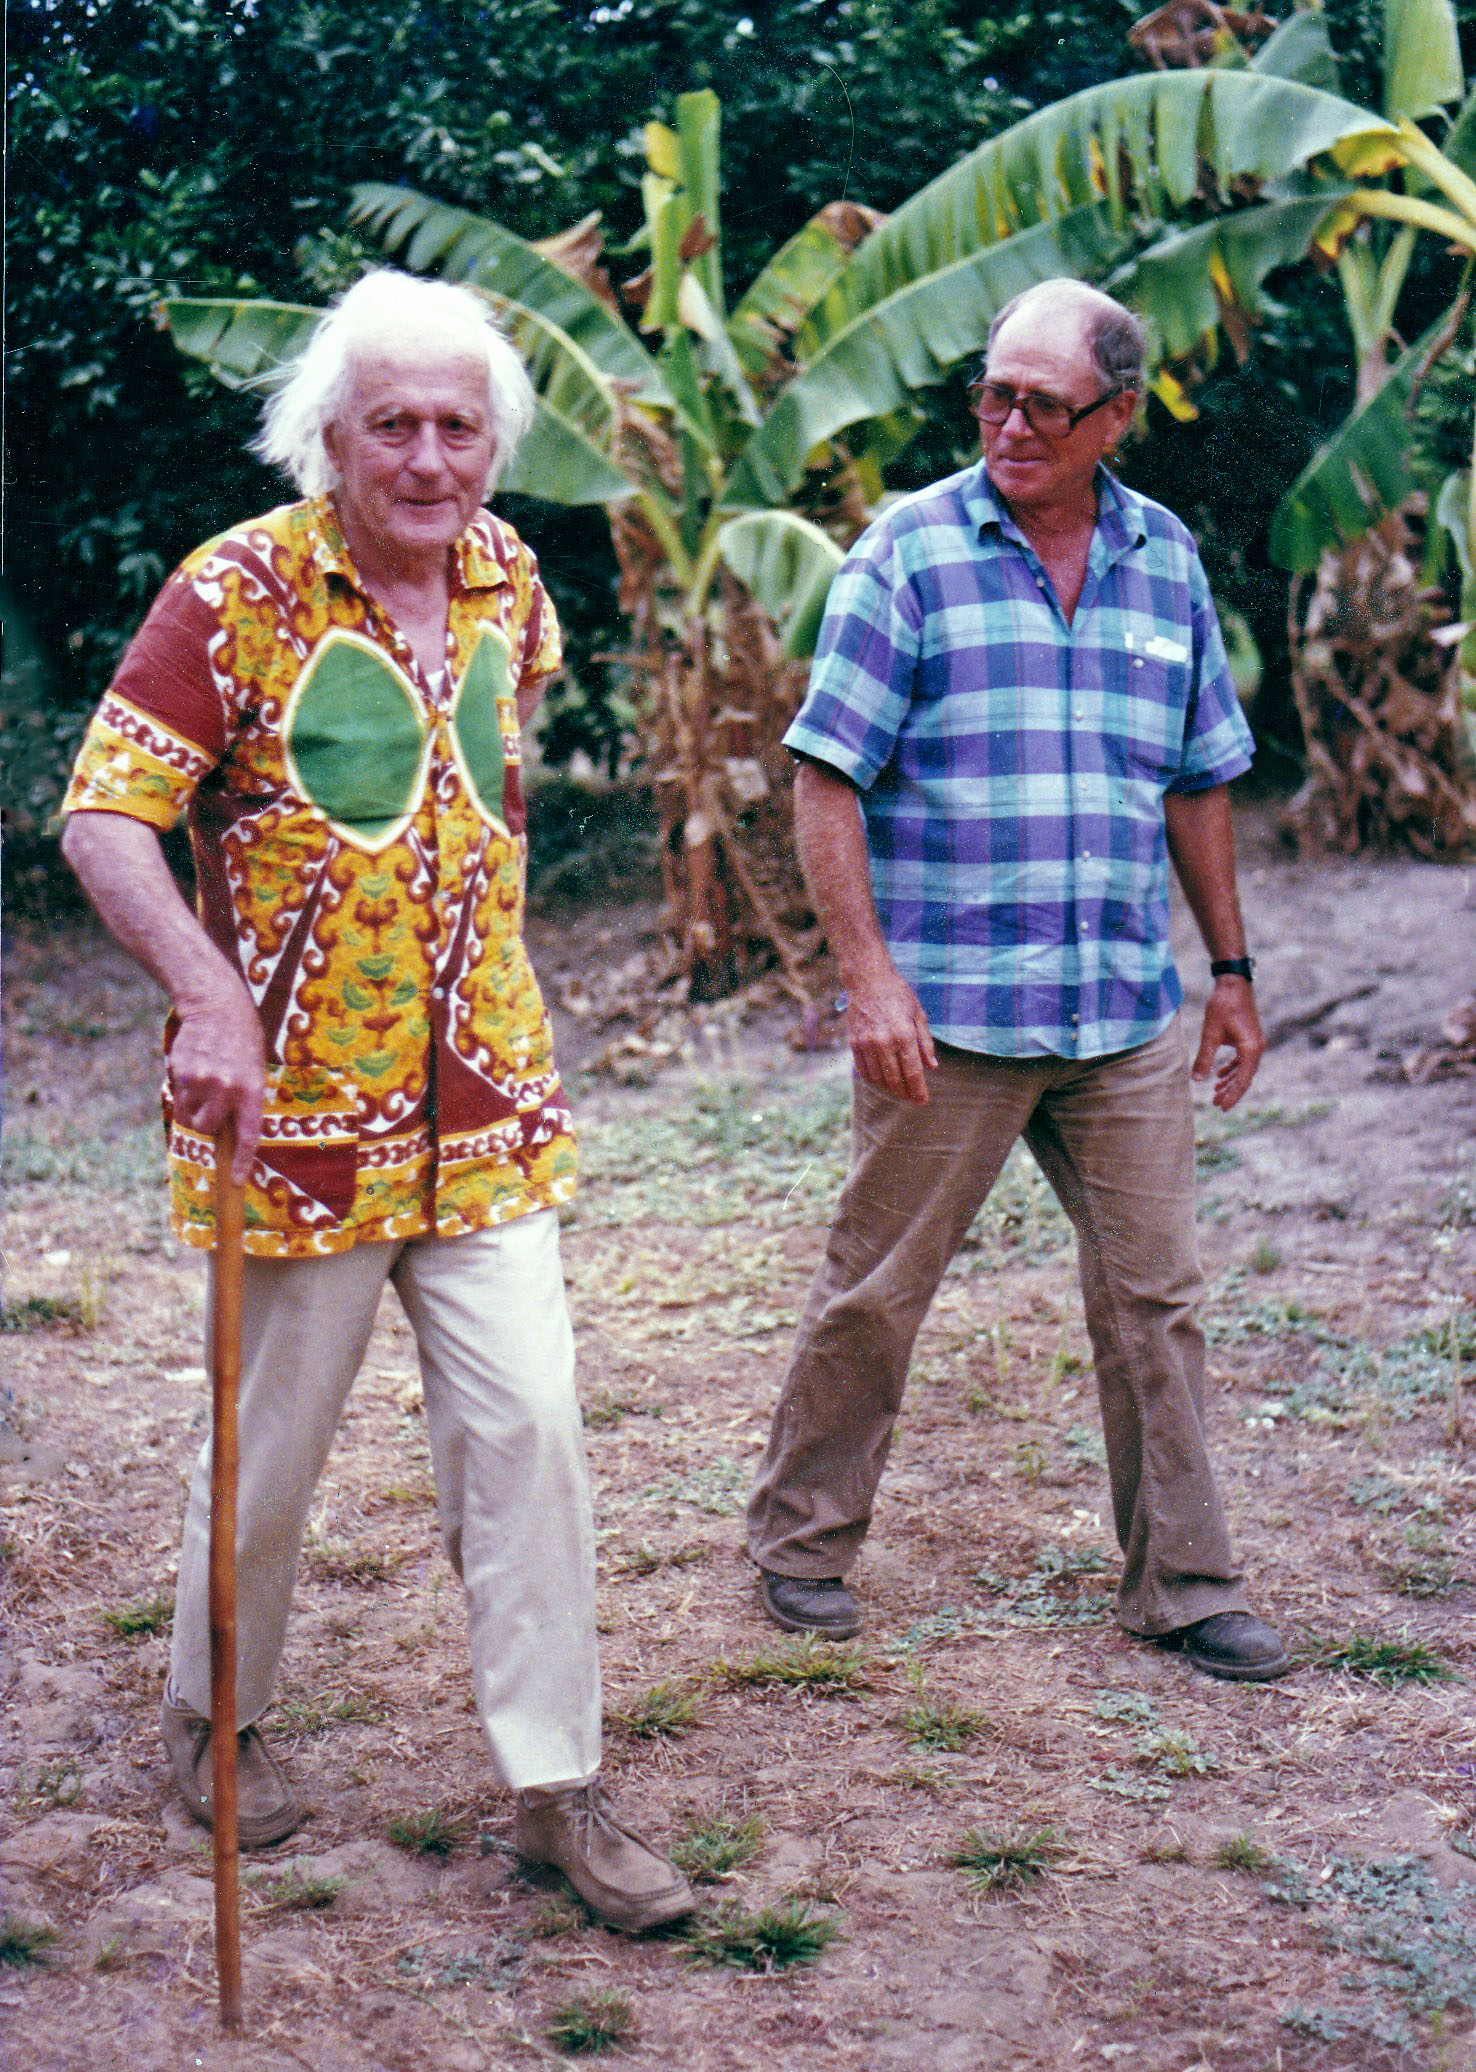 1985-Alain Sizaret avec René Dumont (à gauche) dans le verger expérimental de Kismatari proche de Garoua dans le nord Cameroun.